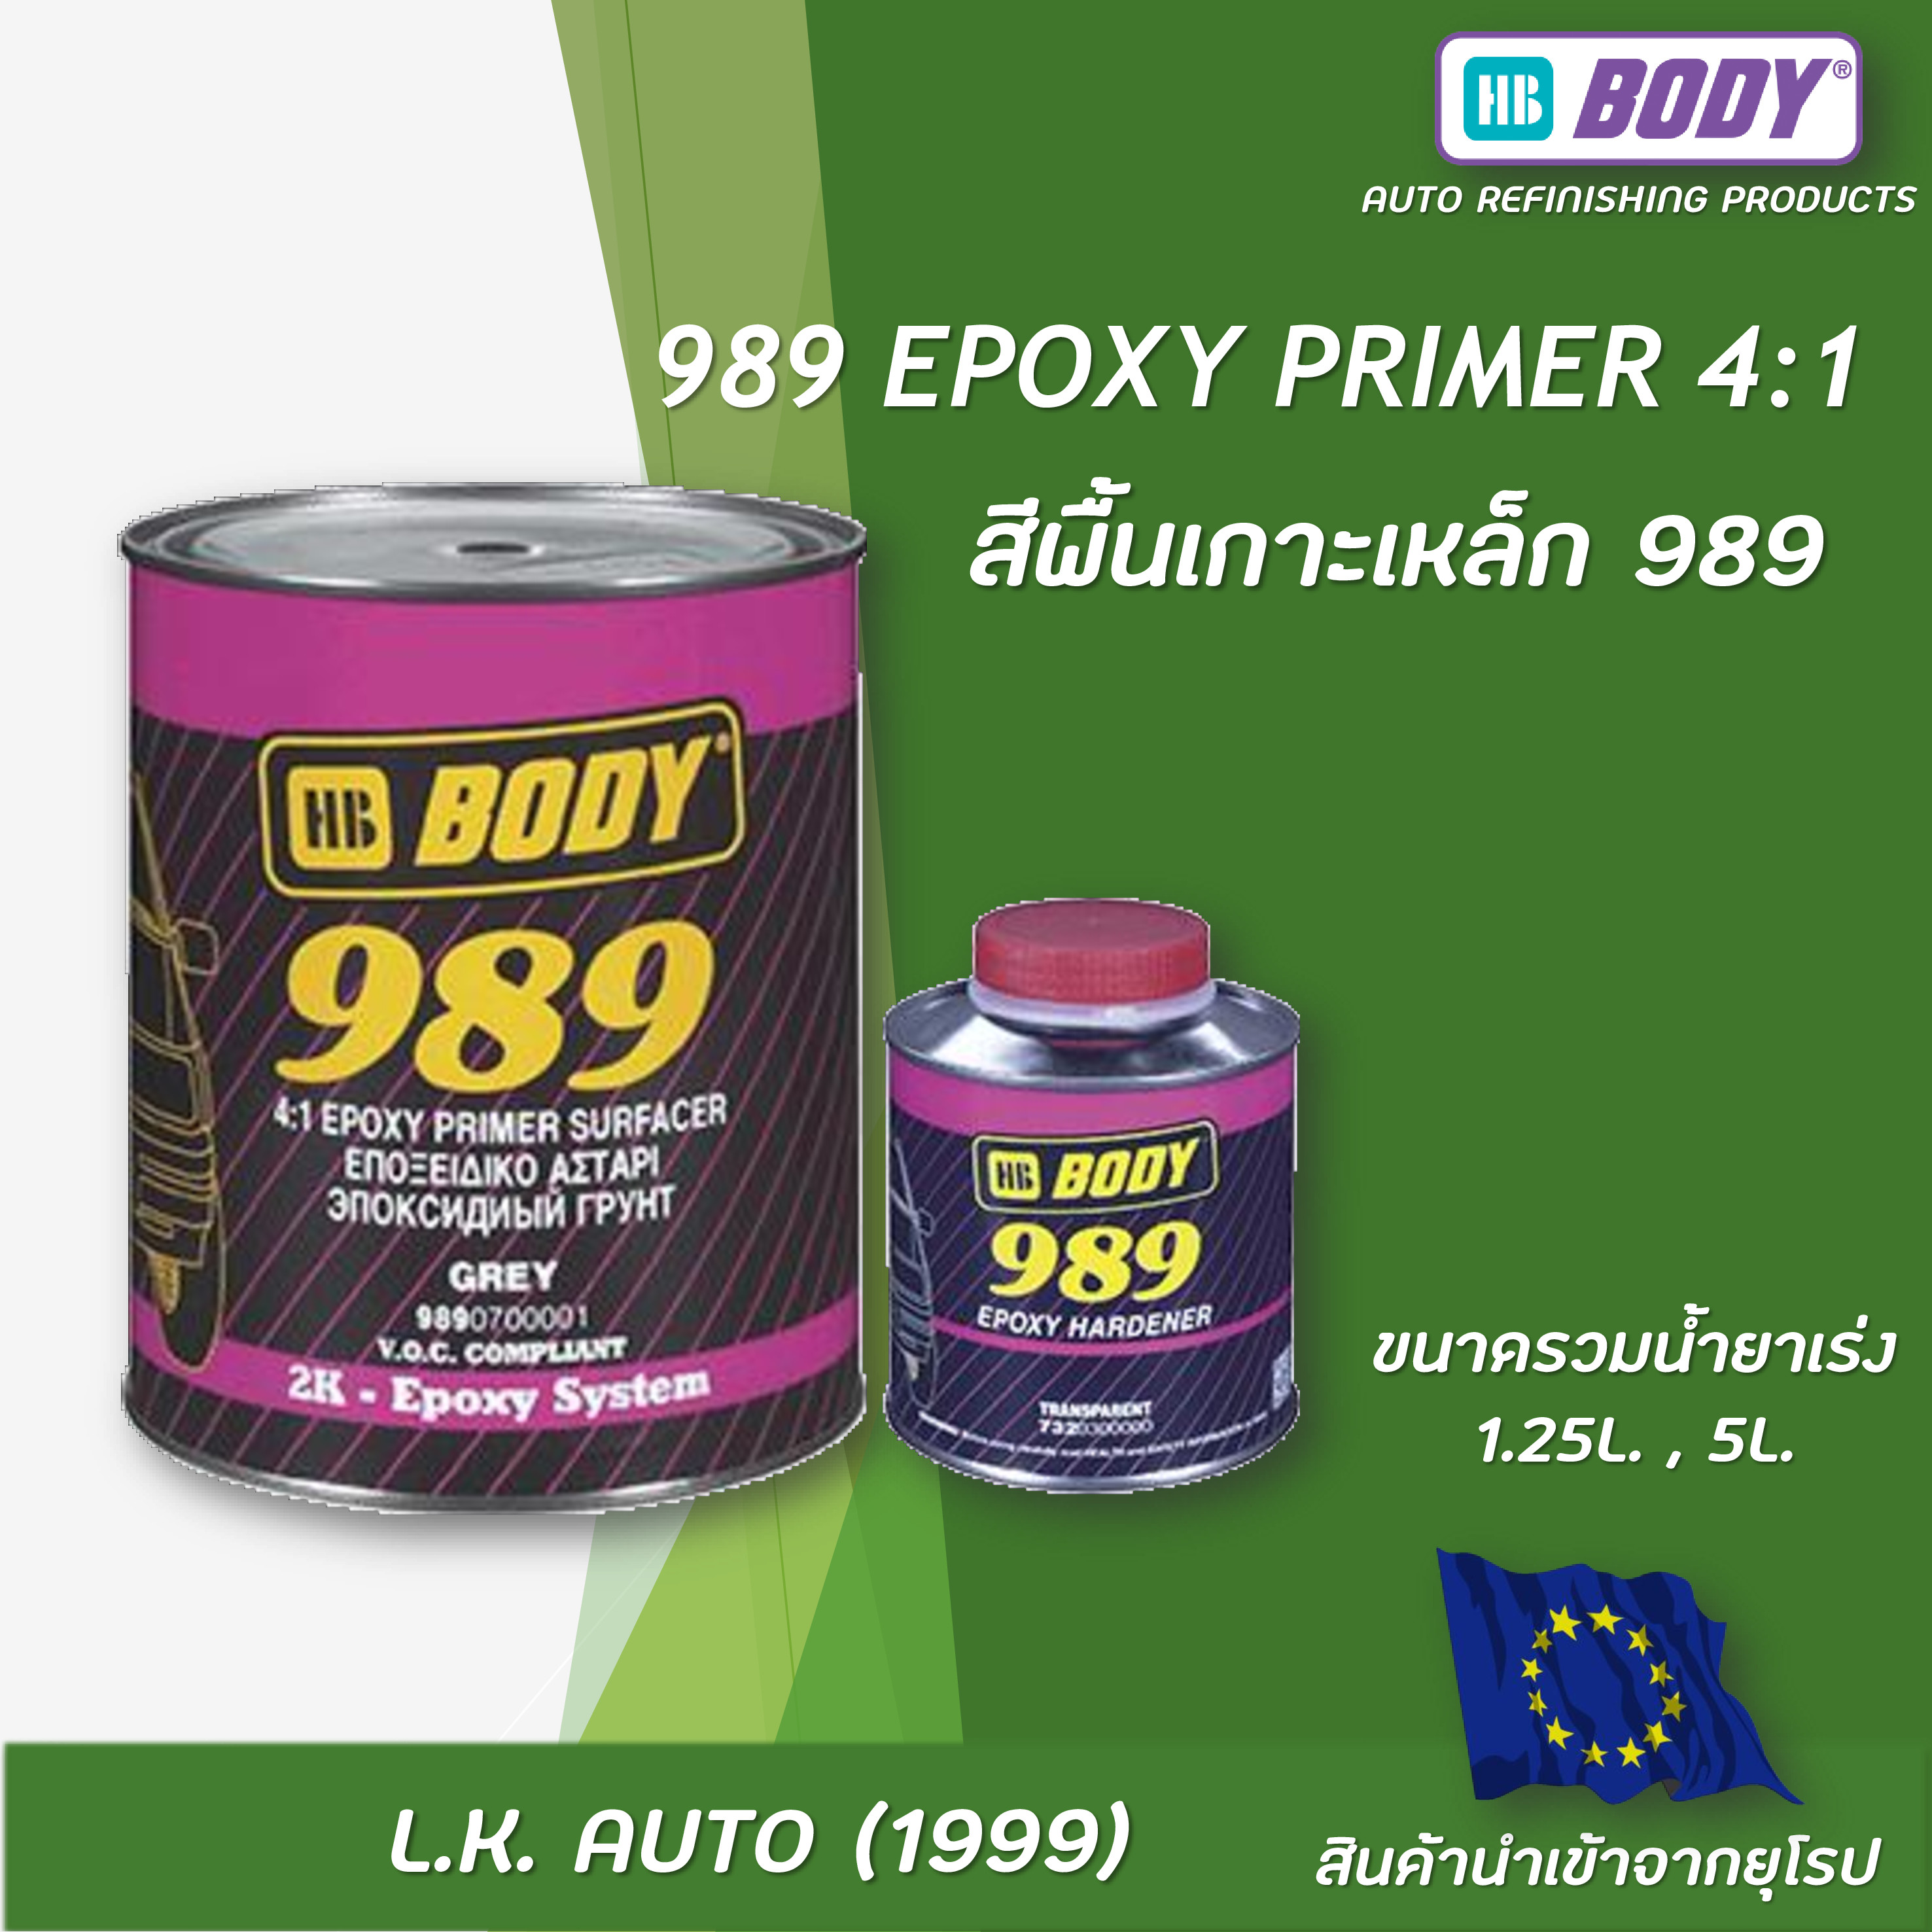 989 4:1 EPOXY PRIMER